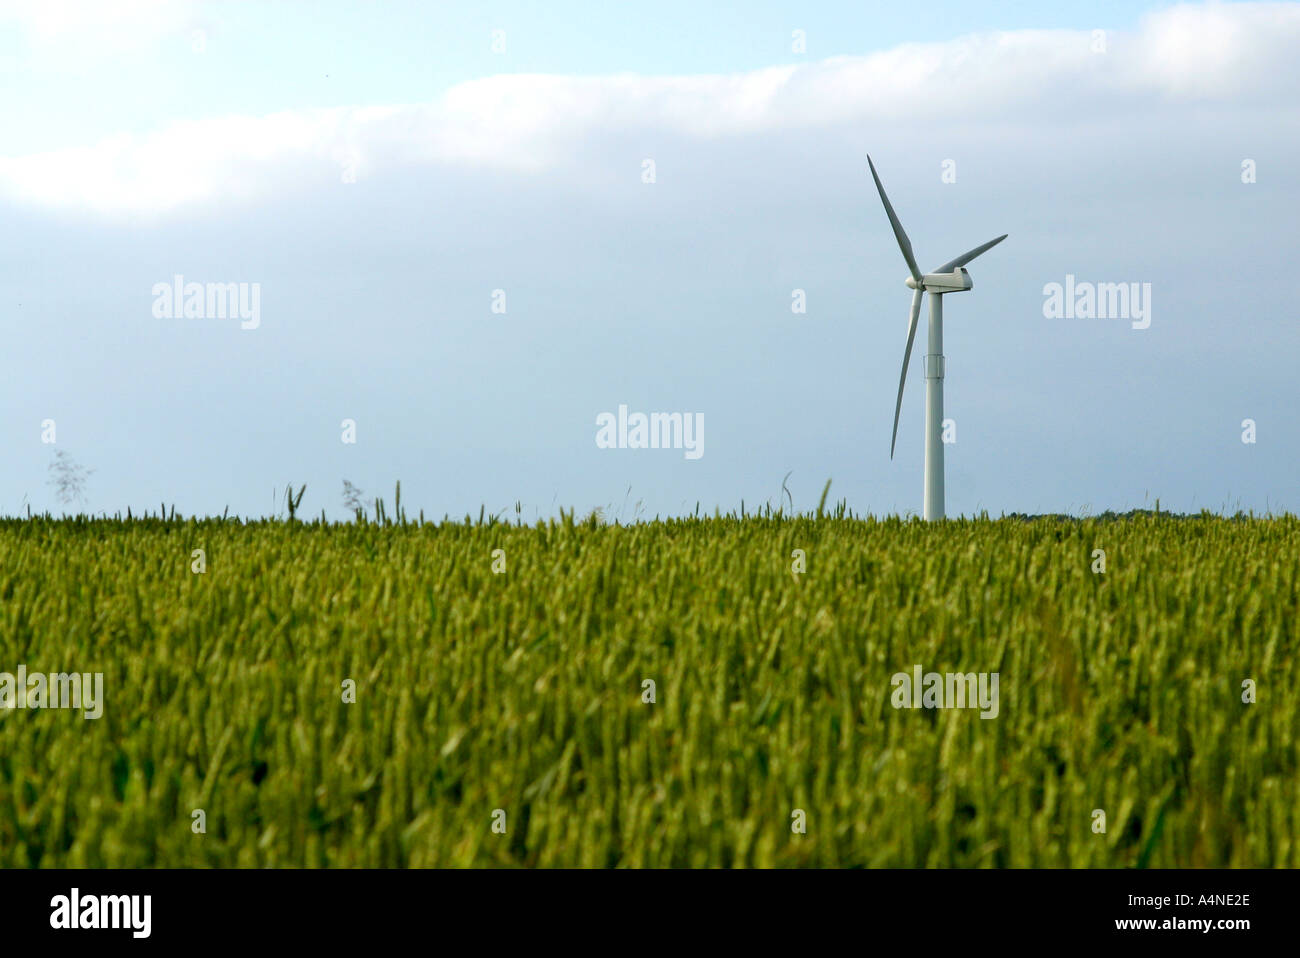 Wind turbine in wheat field, Denmark Stock Photo